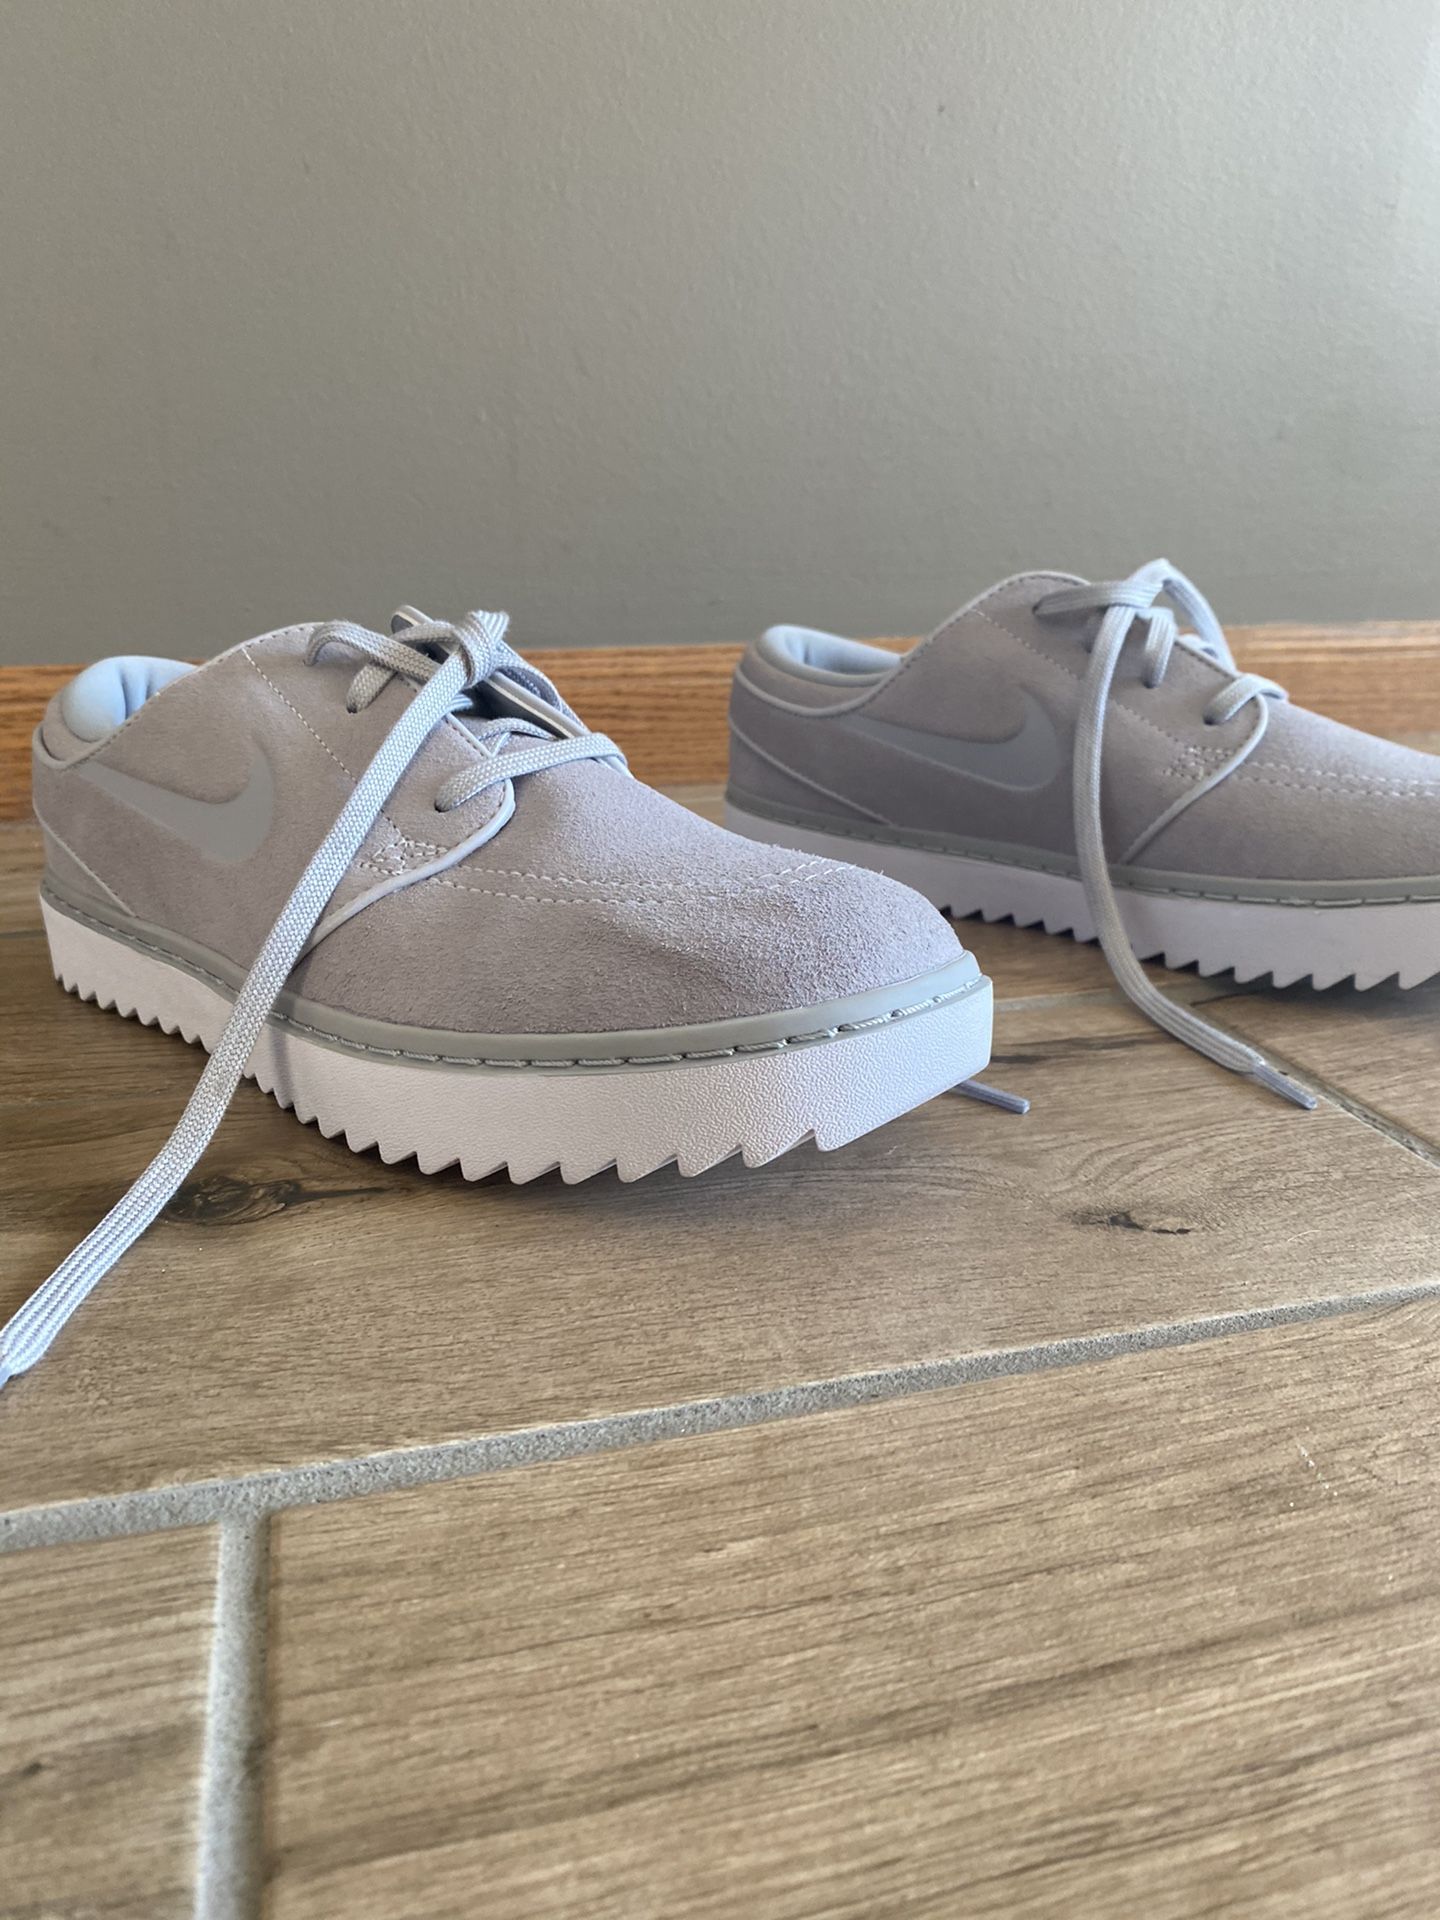 Janoski grey and white Nikes